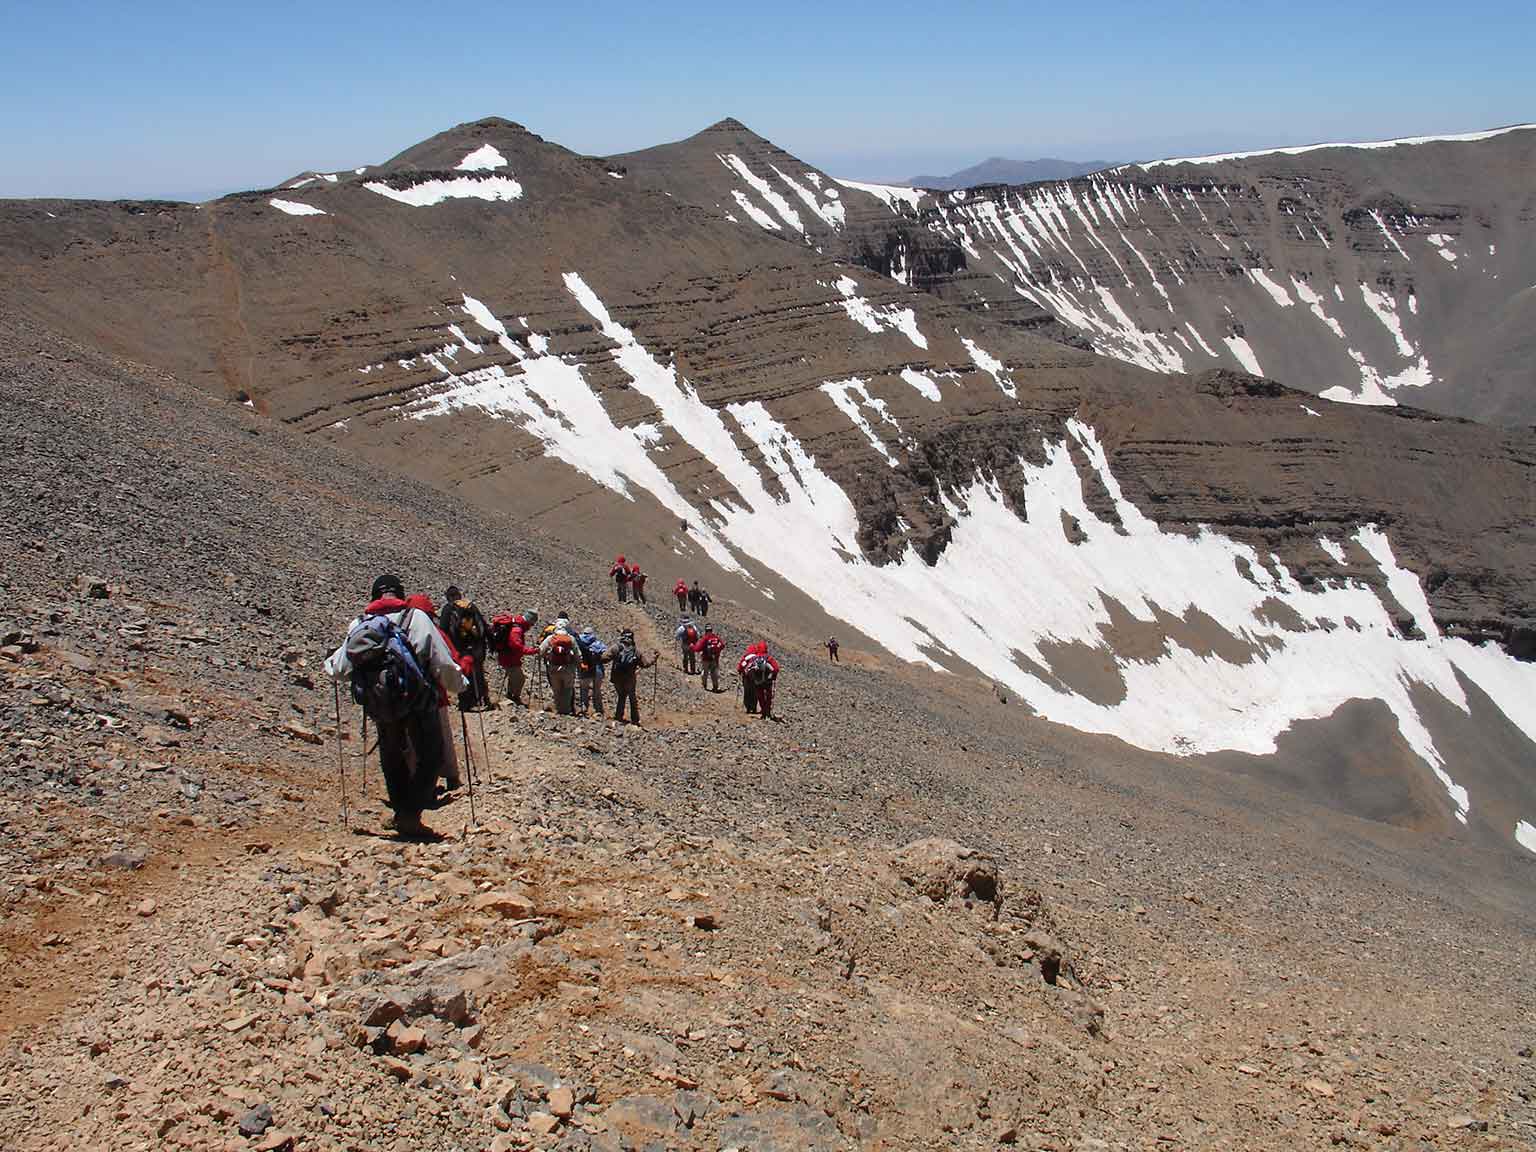 Gorges et sommet du M'Goun (4068 m)